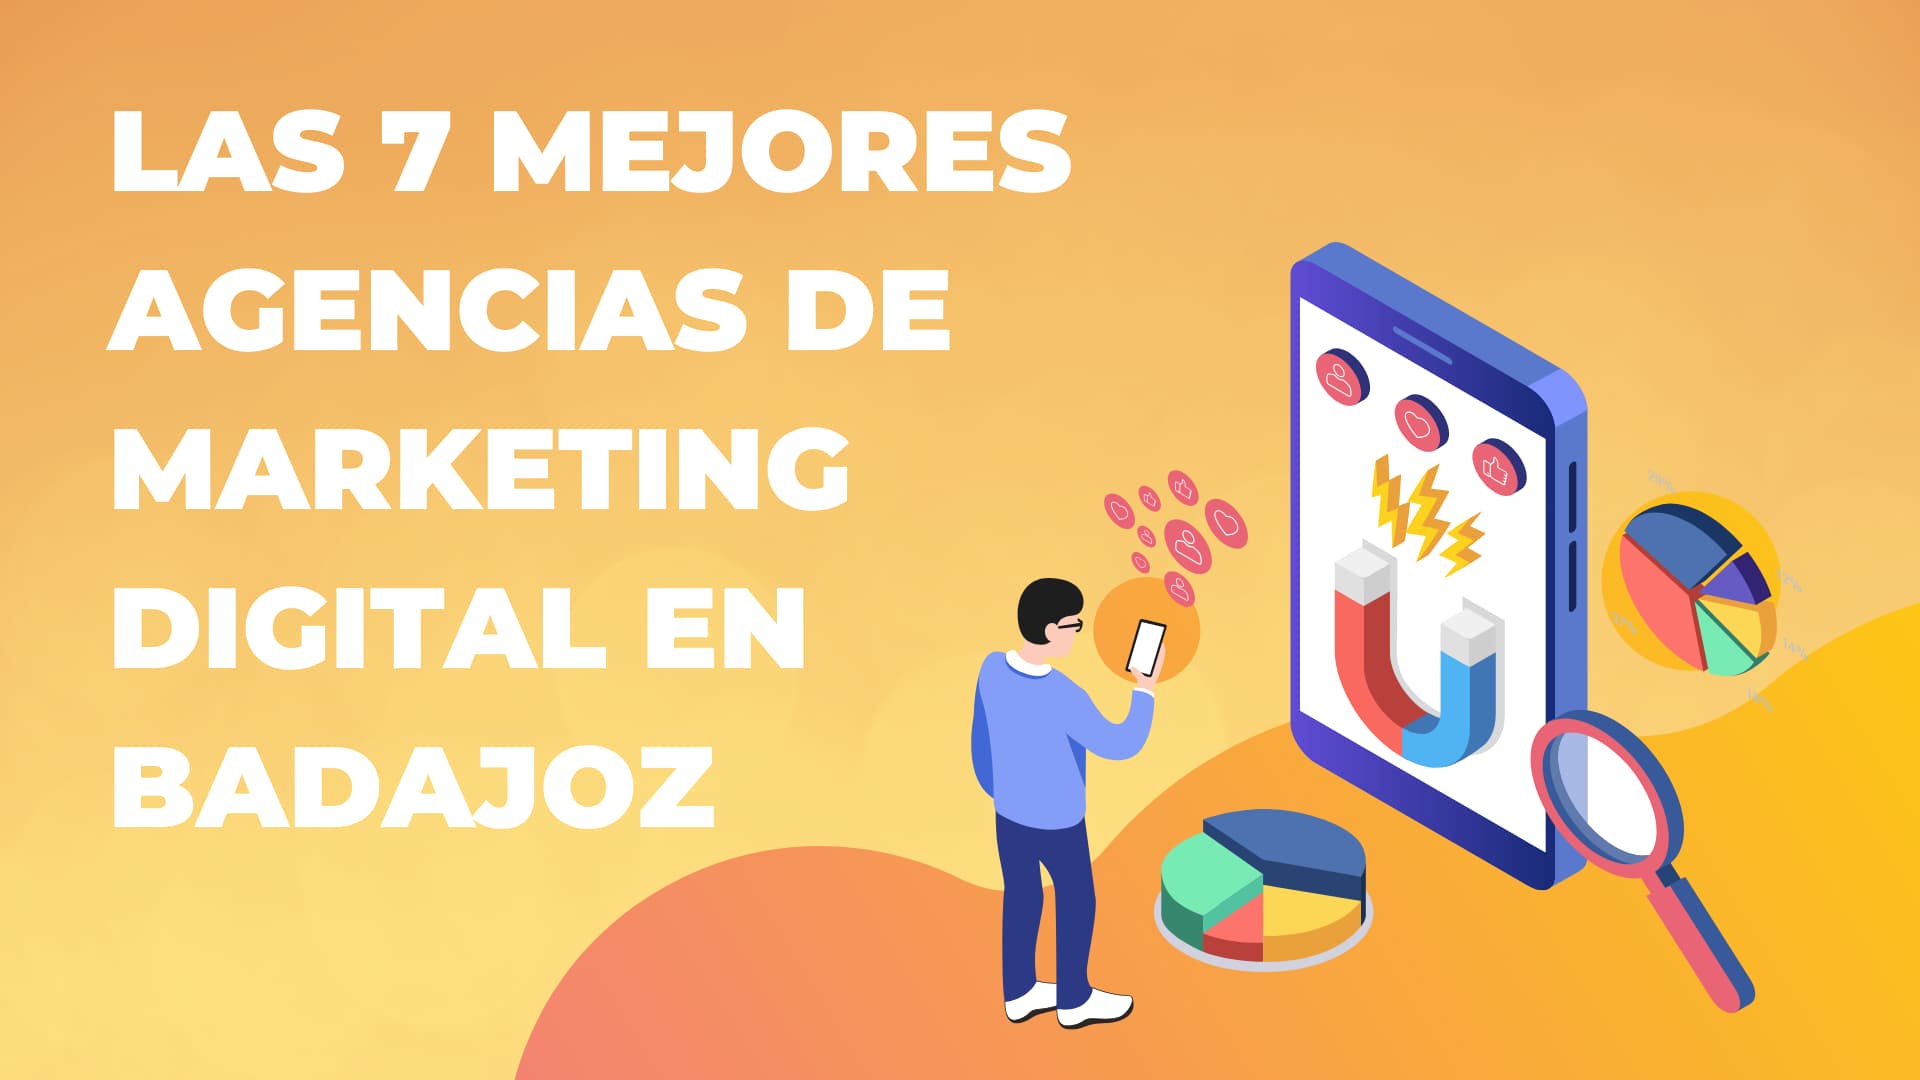 Las 7 Mejores Agencias de Marketing Digital en Badajoz